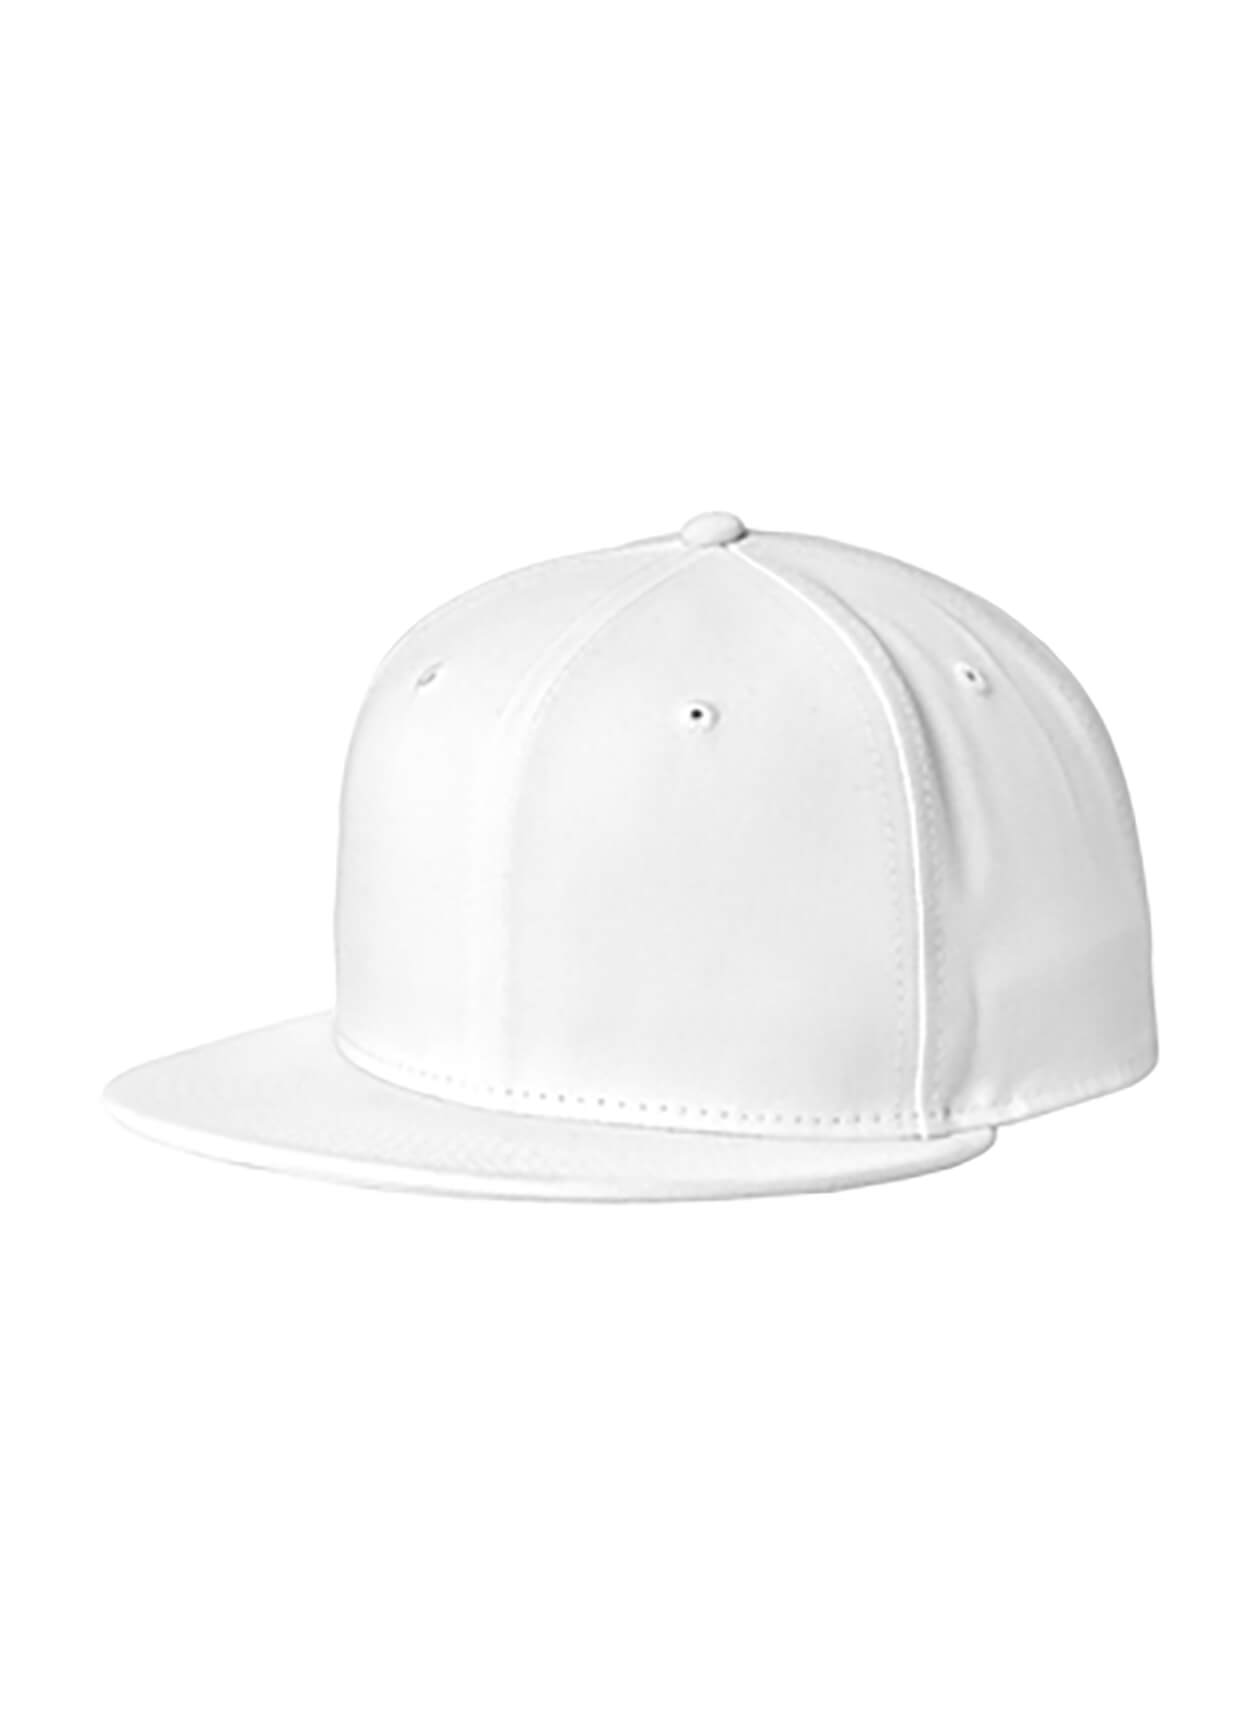 New Era White Standard Fit Flat Bill Snapback Cap